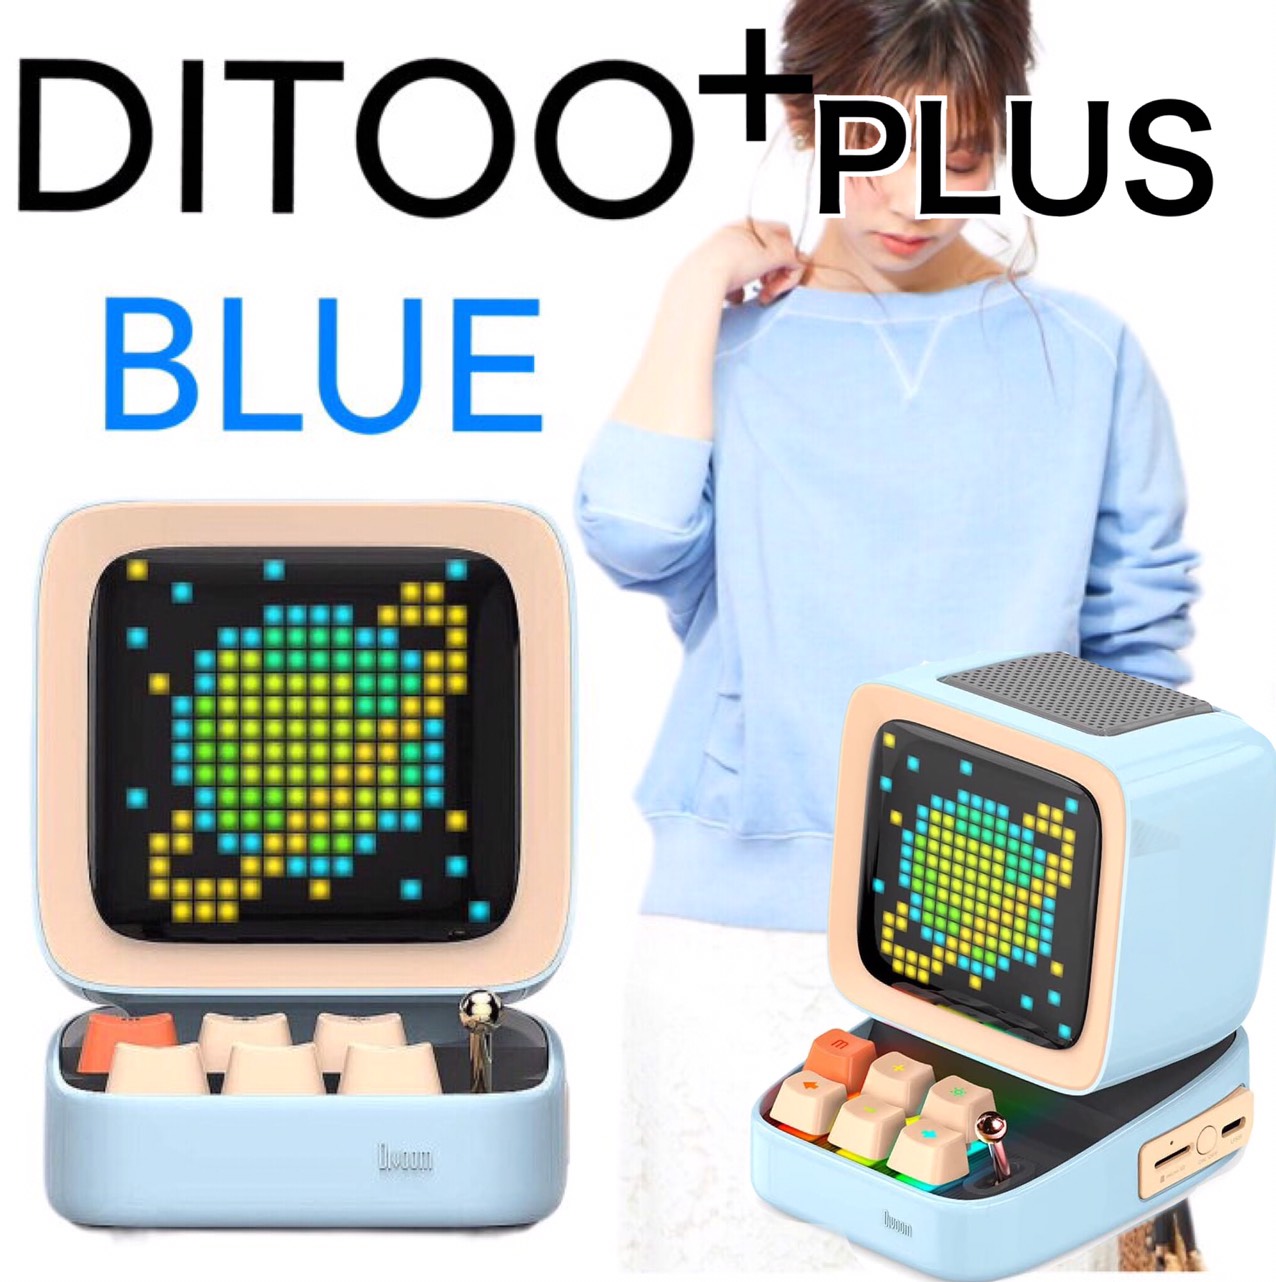 ポータブルスピーカー 21新商品 ディブーム 青 ブルー スピーカー 小型 Bluetooth Blue Pulus Ditoo Divoom 365日保証 ディトゥー かわいい バズる 誕生日 入学 卒業 ギフト 贈り物 プレゼント インテリア ドット絵 高音質 話題 大人気 クラシックpc ブルートゥース